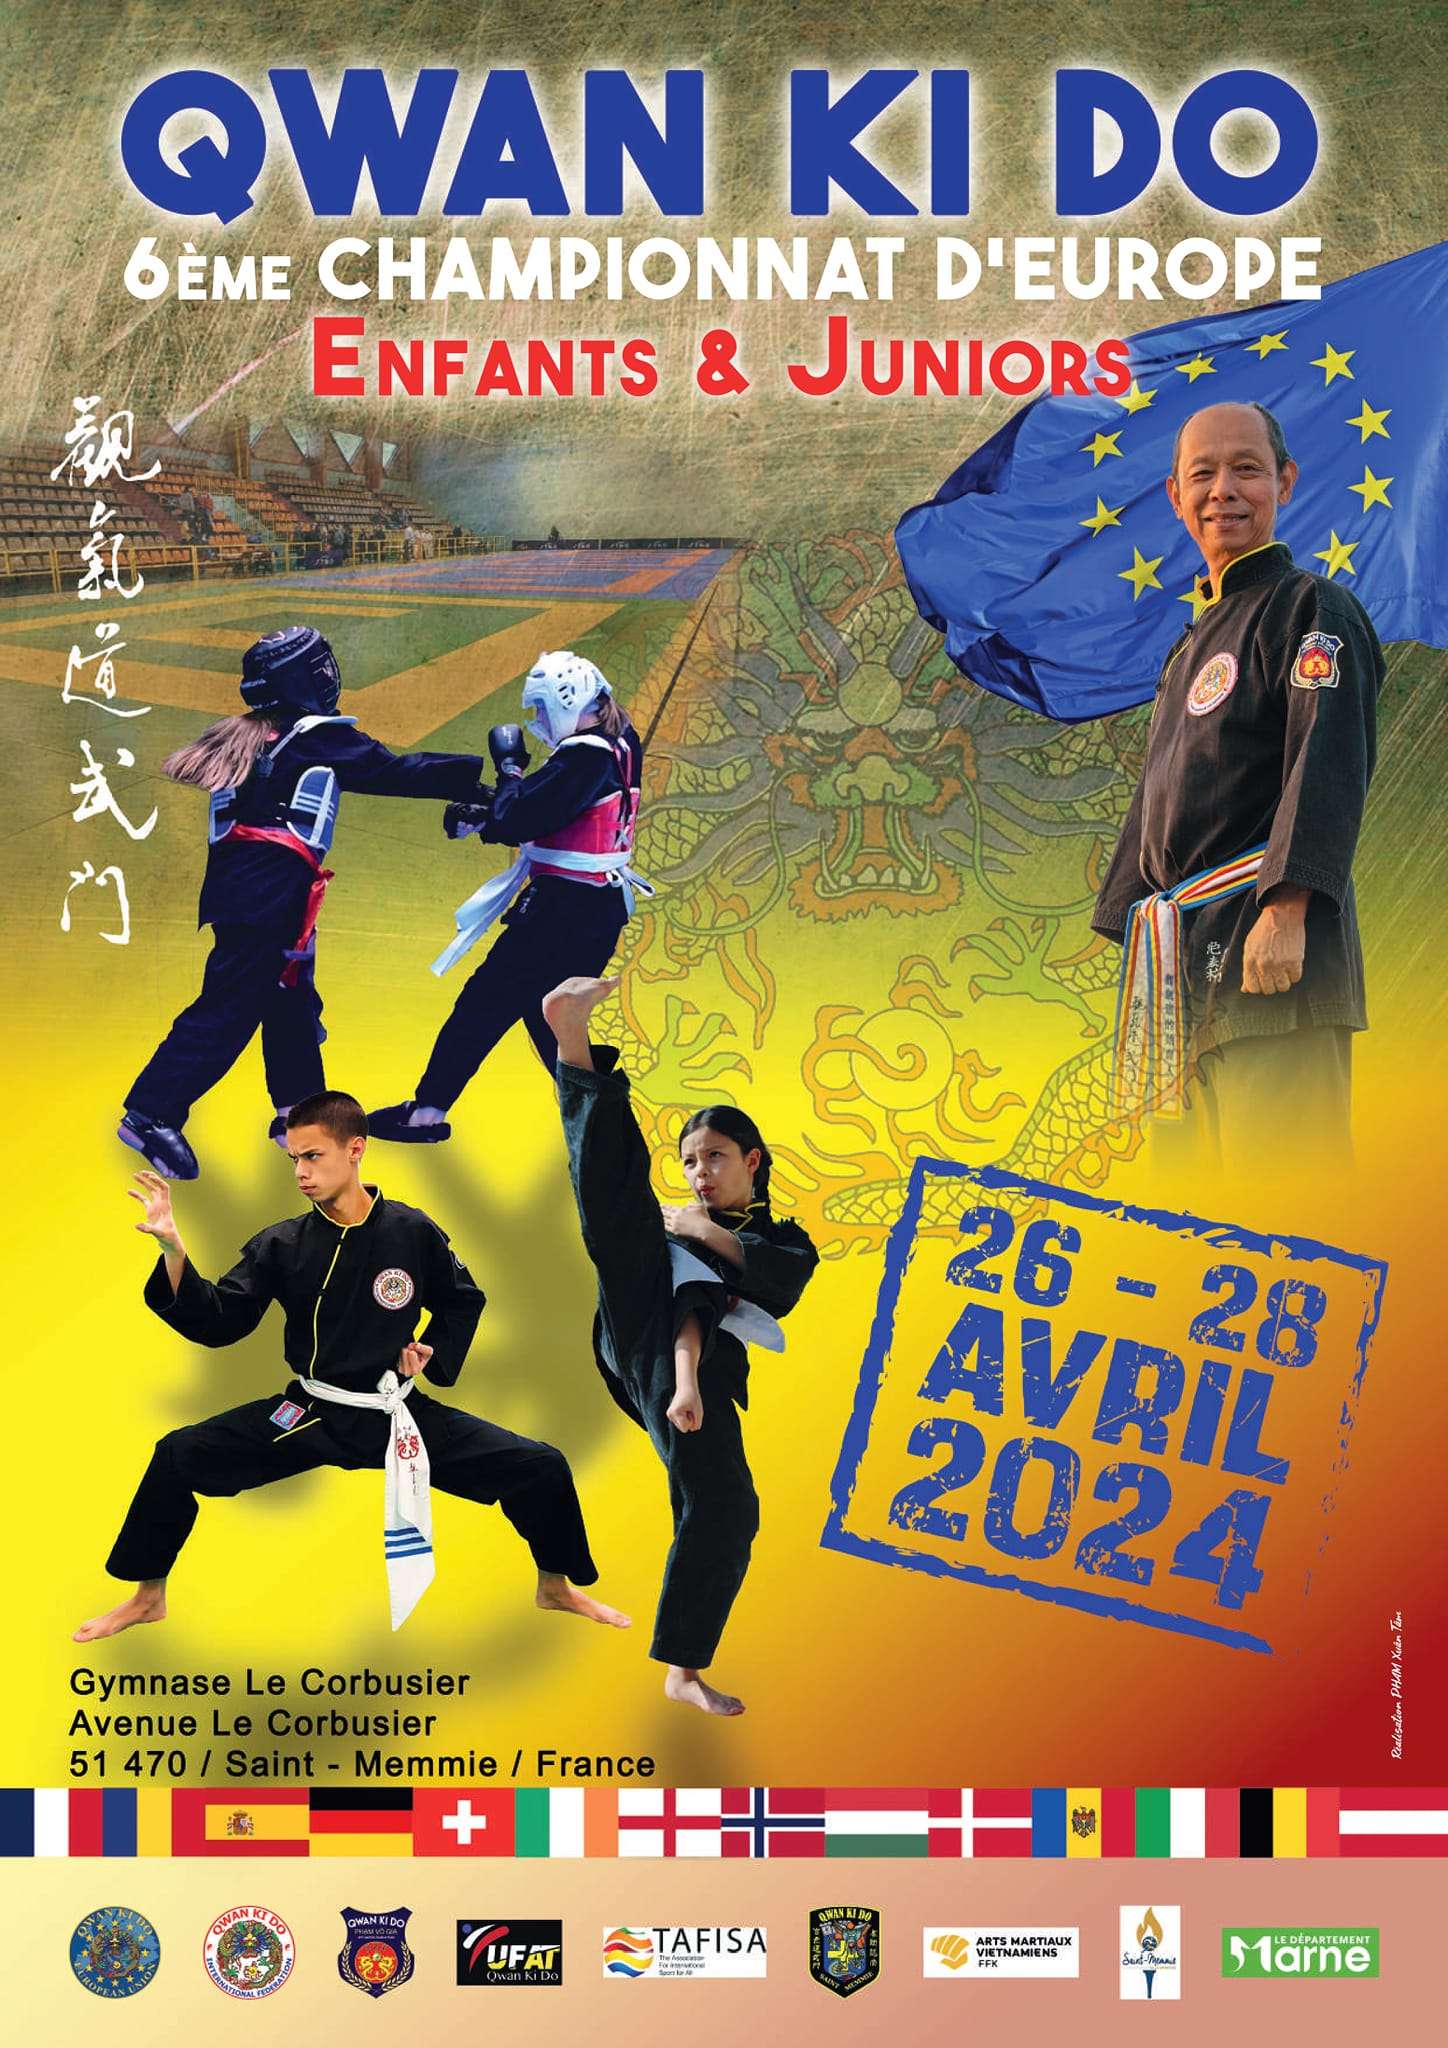 Affiche annonçant le championnat d'Europe de Qwan Ki Do